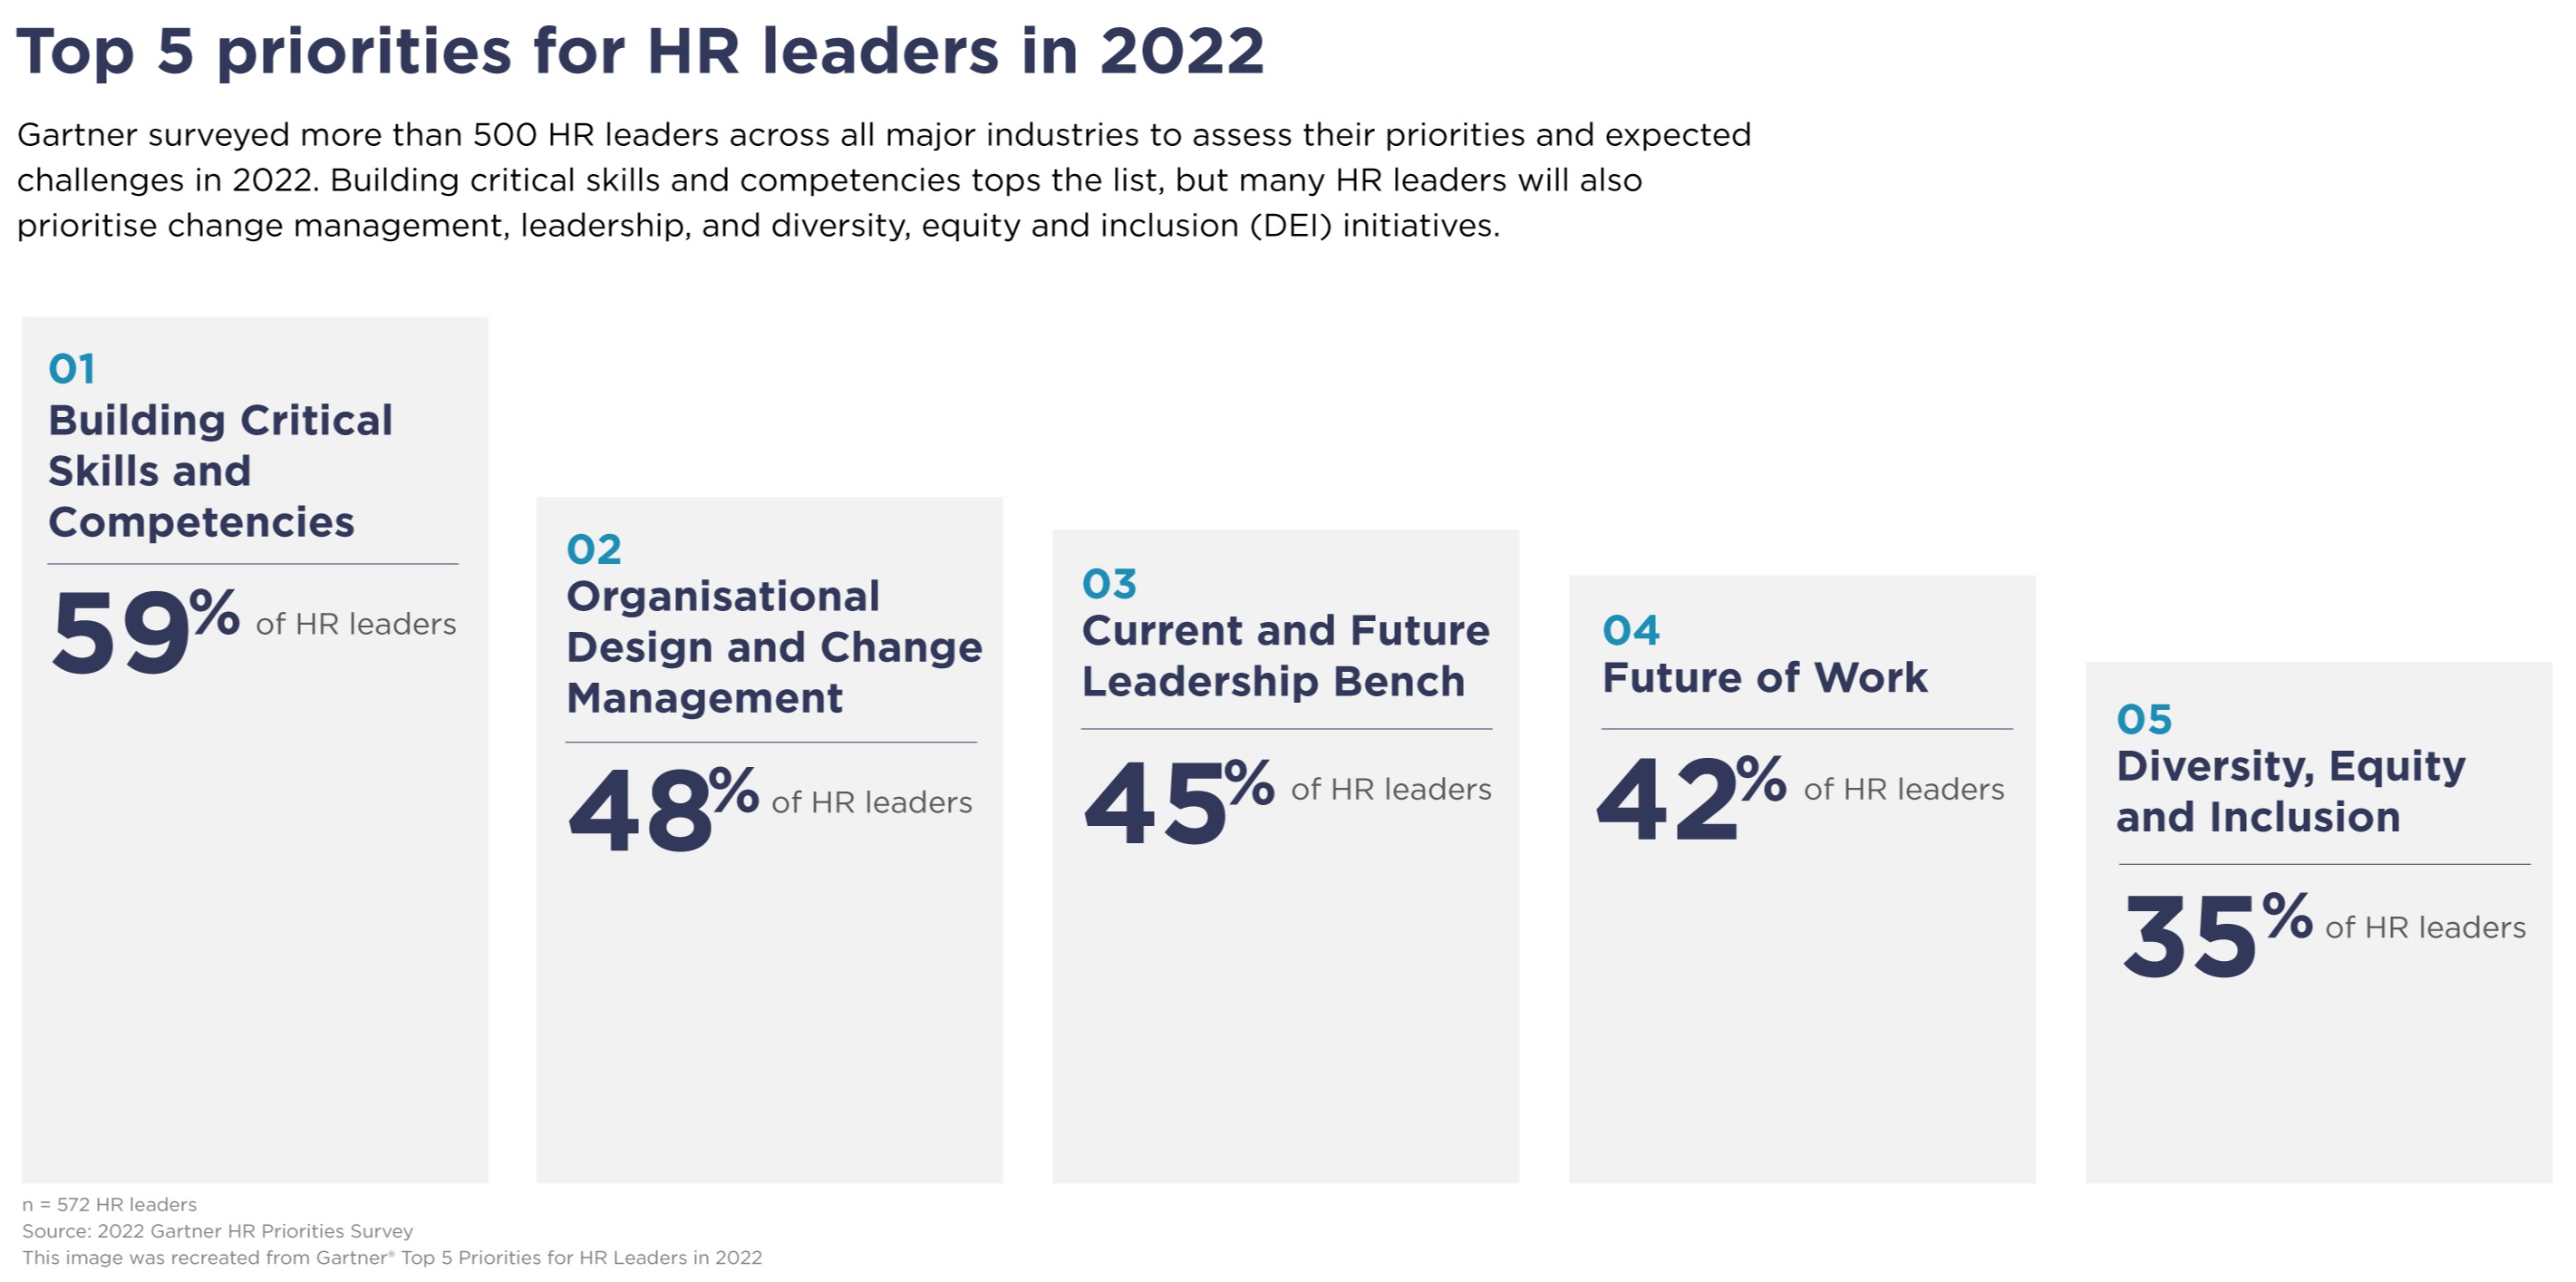 Top 5 Priorities for HR Leaders